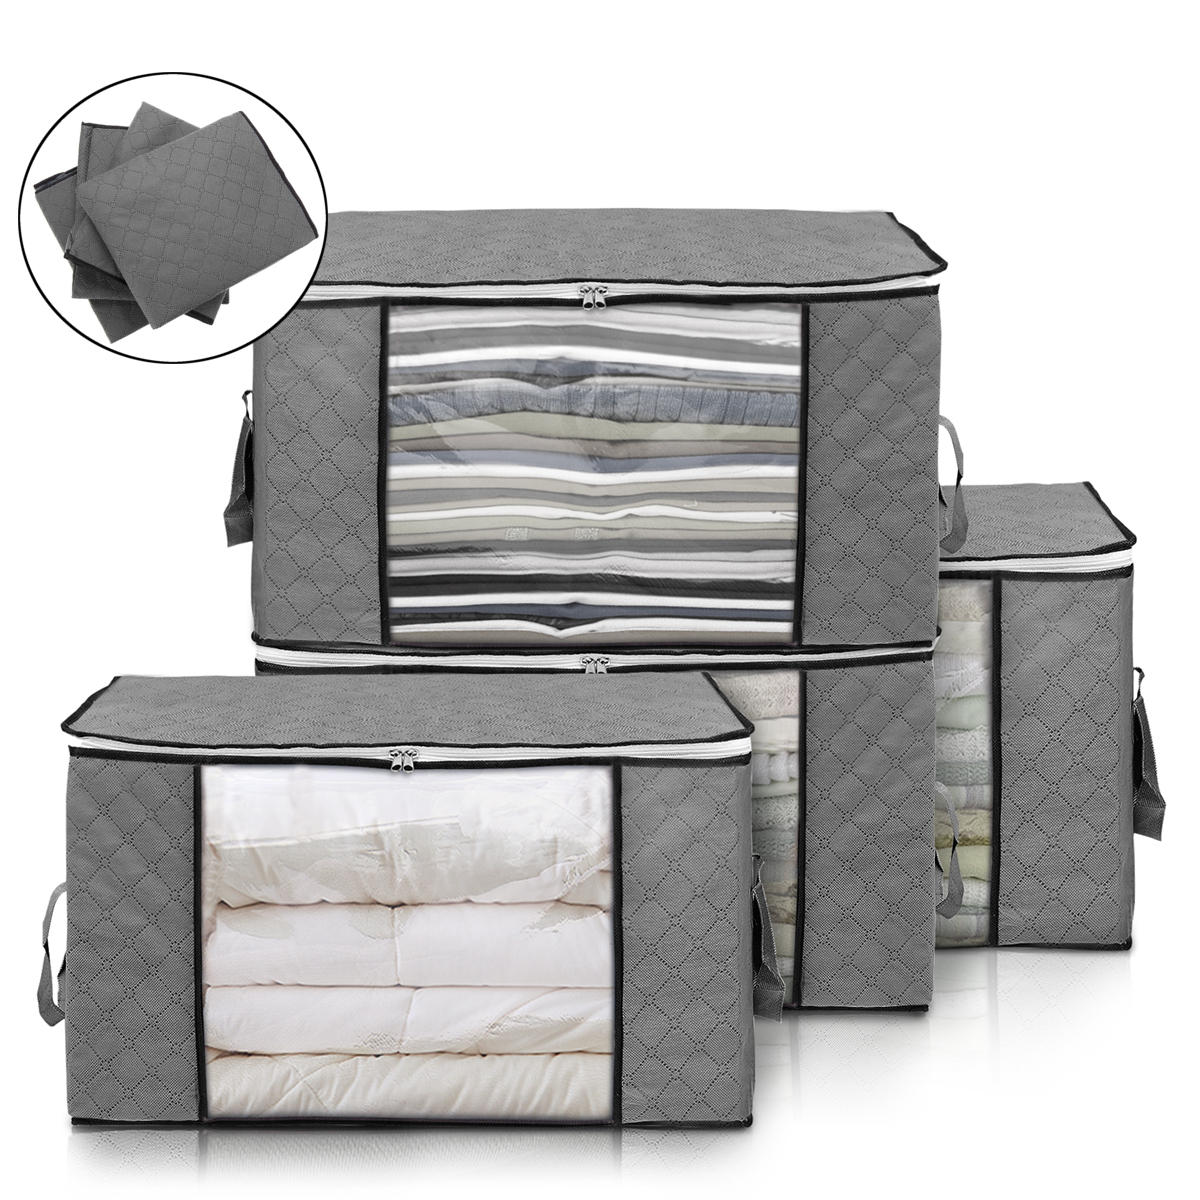 Set van 4 grote opvouwbare kledingopbergzakken met versterkte handgreep, stevige rits en stof voor het opbergen van dekens, dekbedden en andere artikelen in de kast